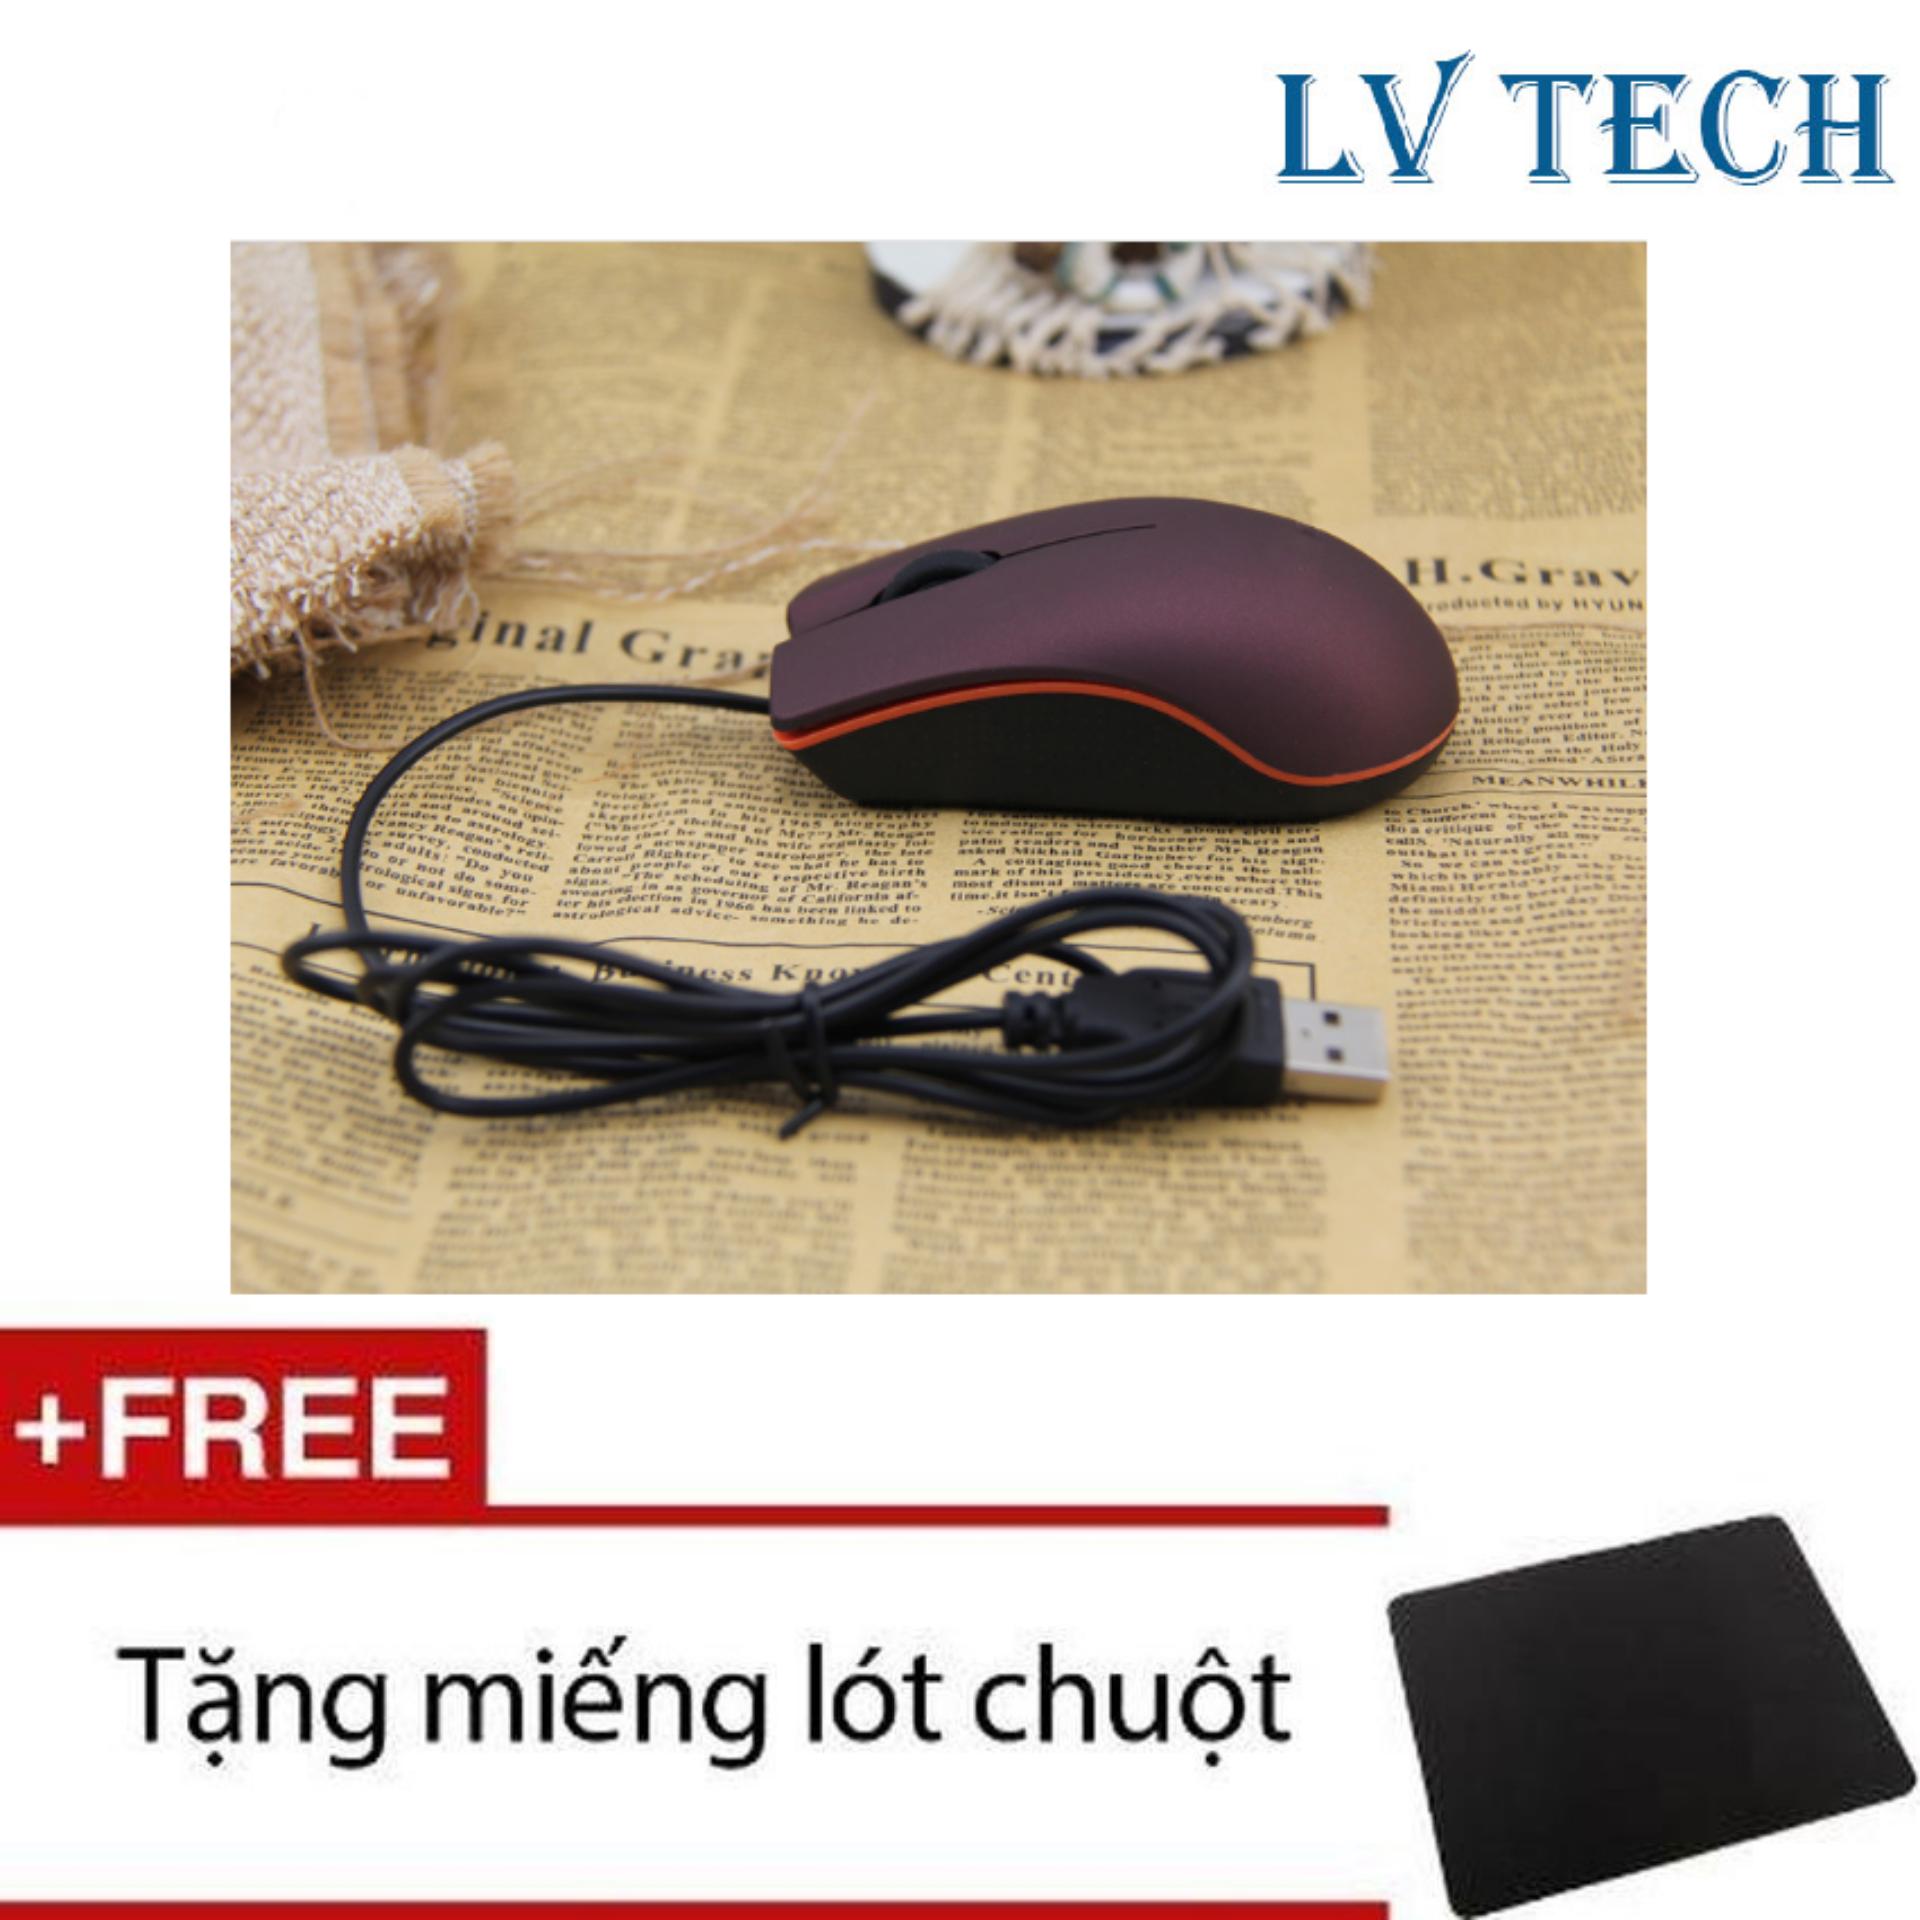 Chuột quang có dây LVTech Mini M20 (Tím) + Tặng 1 tấm lót chuột